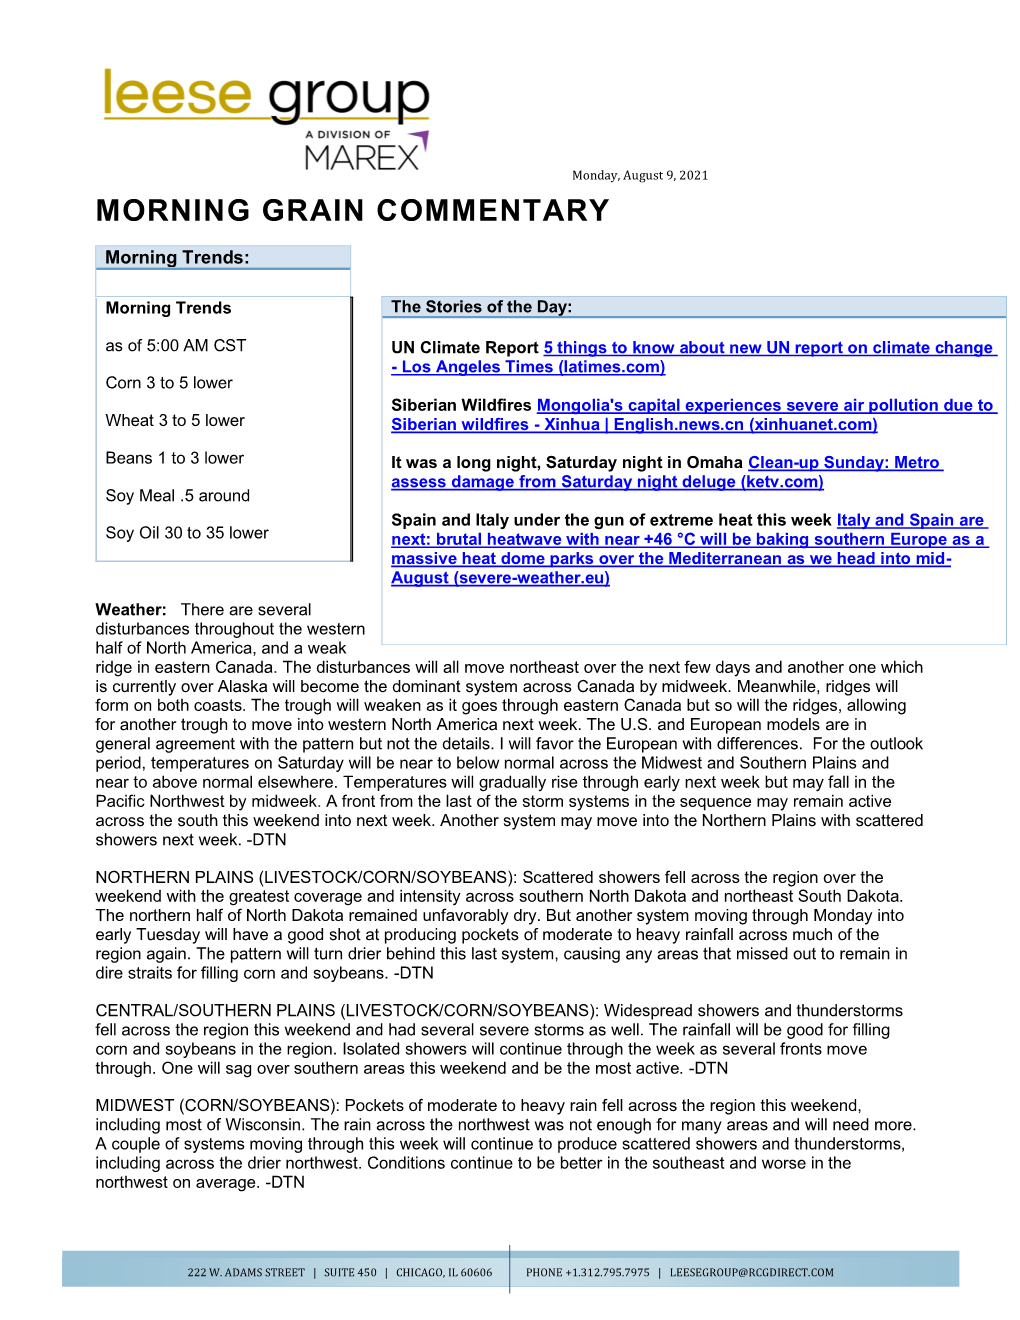 Morning Grain Commentary